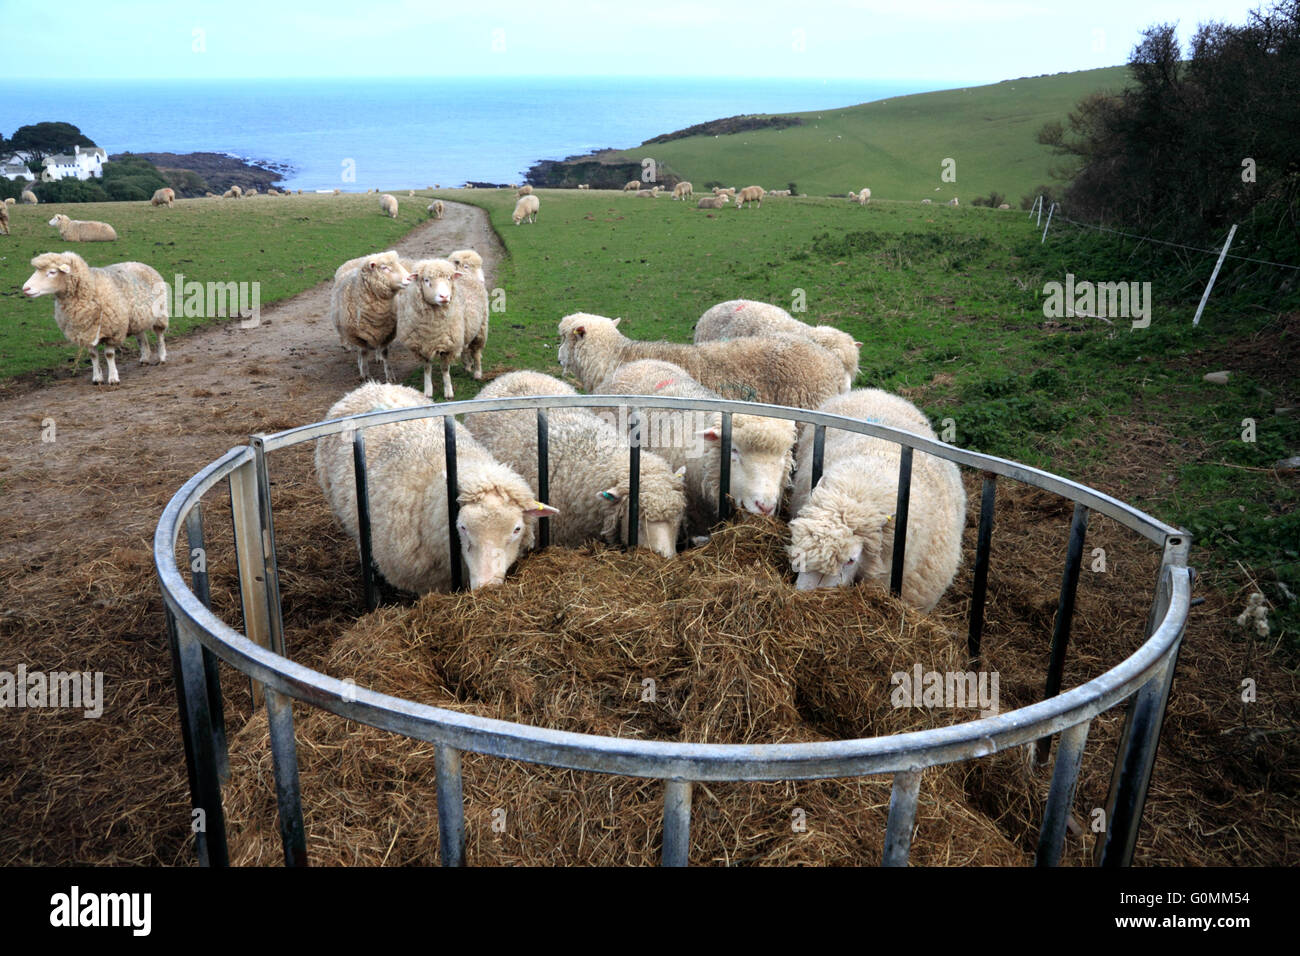 Sheep feeding on hay near Colona beach, Chapel Point, Portmellon, Cornwall. Stock Photo